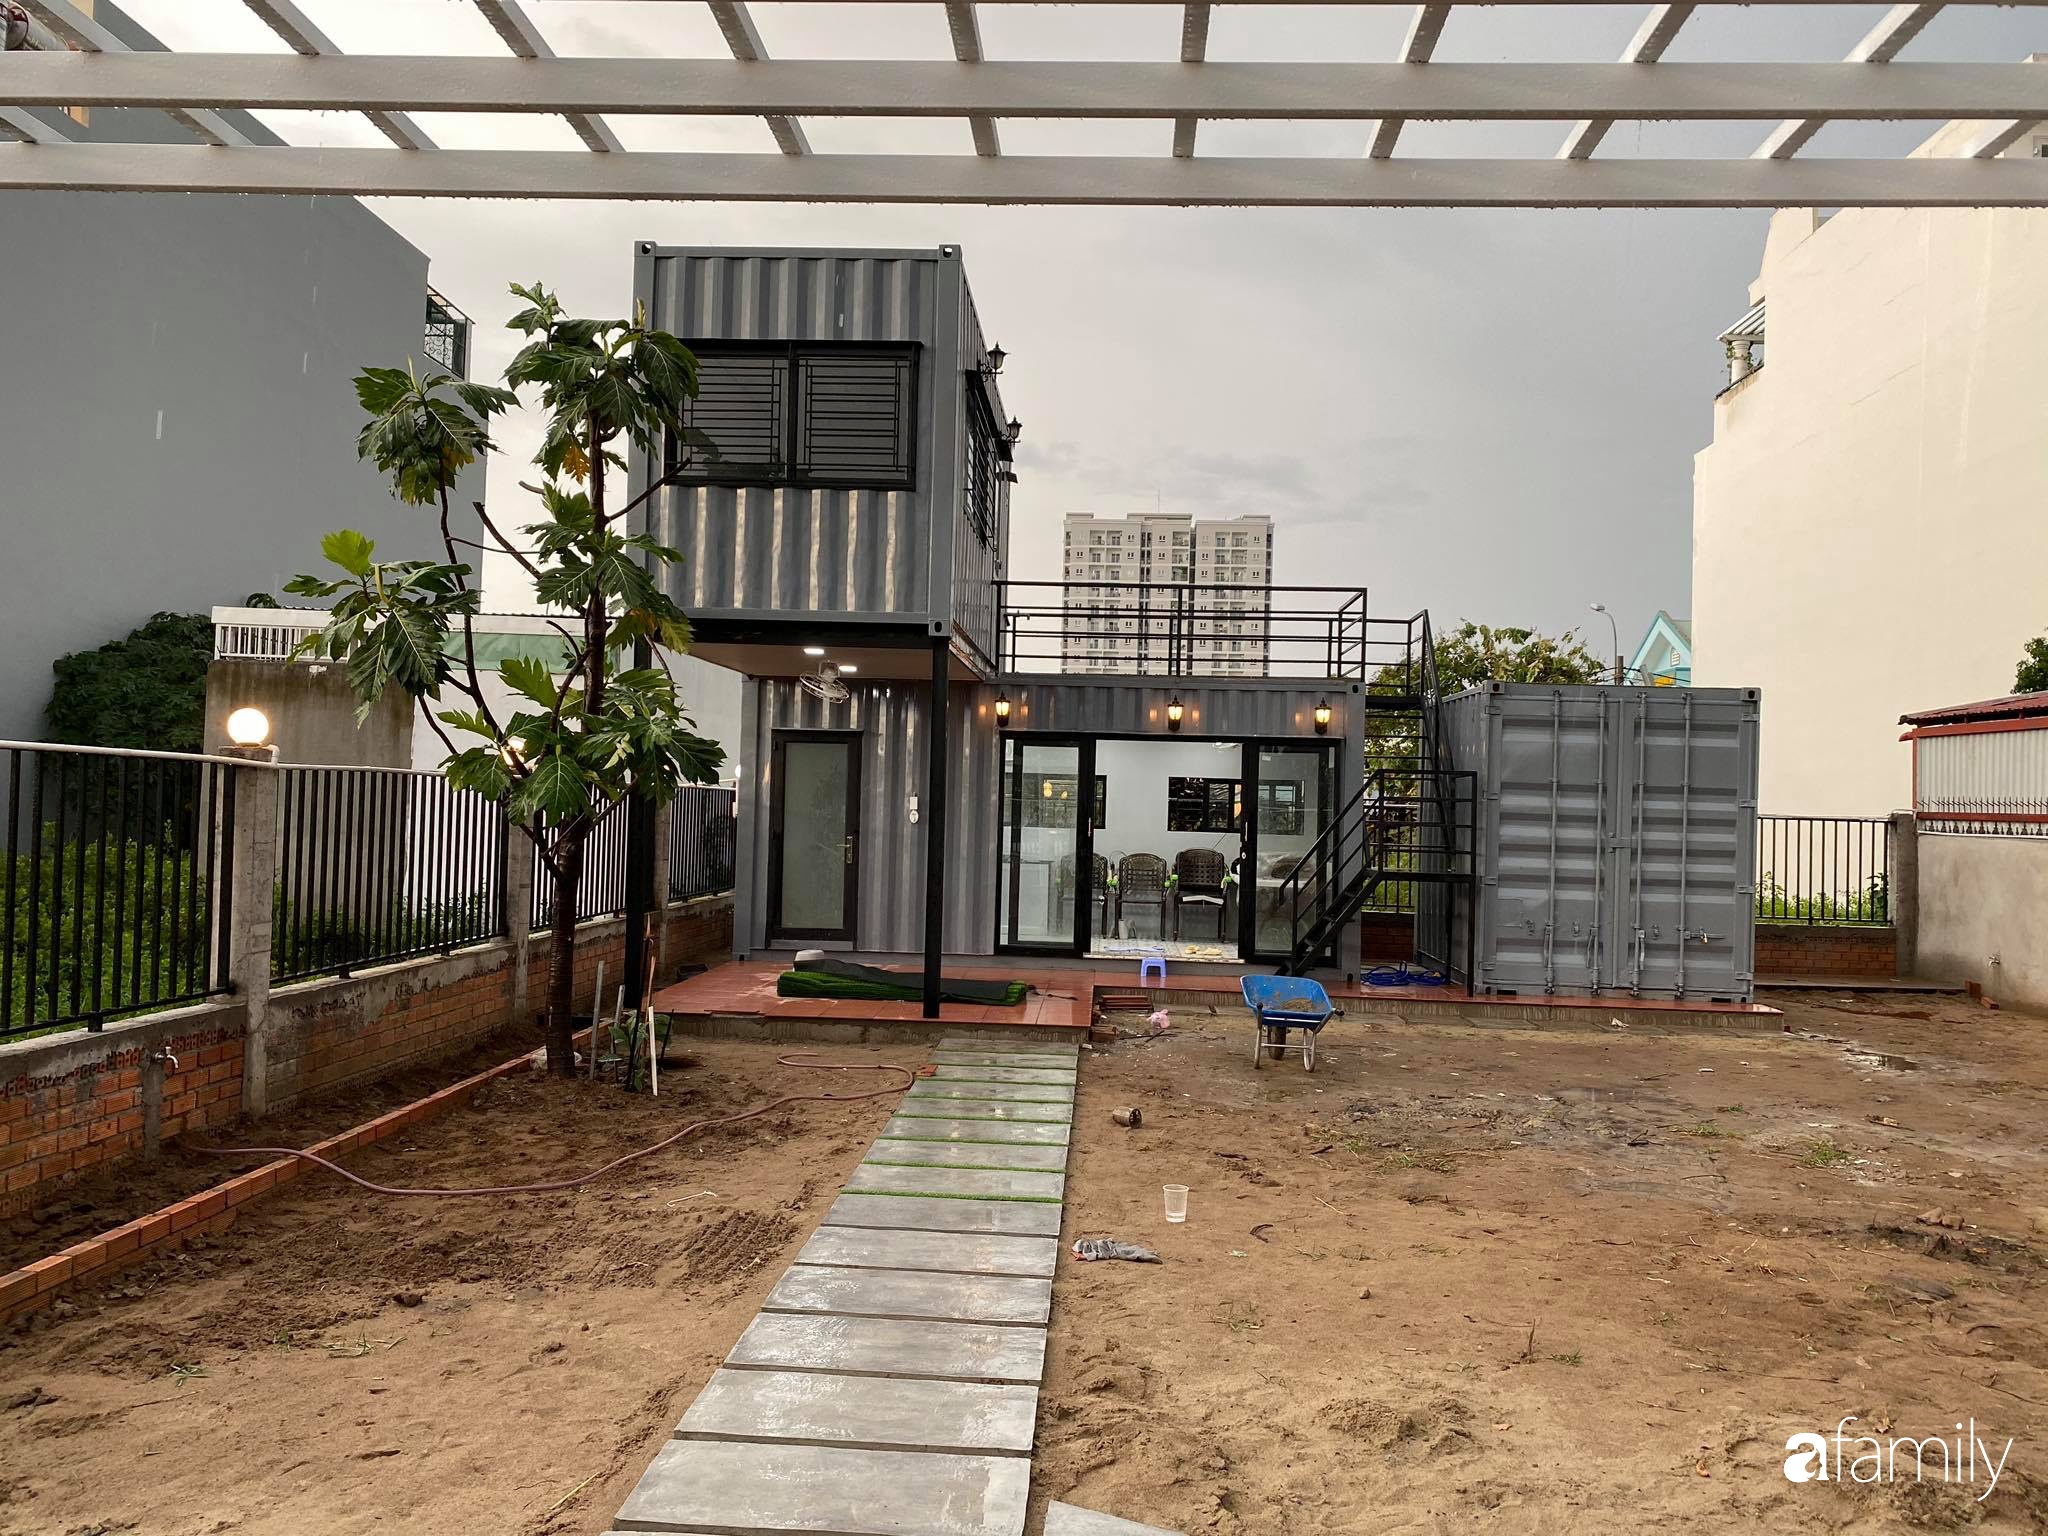 Những cô gái thông minh với chi phí 500 triệu đã tạo nên một ngôi nhà vườn container cực kì độc đáo để dành tặng bố của mình. Với kiến trúc đơn giản nhưng tinh tế, ngôi nhà này không chỉ sử dụng tối đa các nguồn lực tái chế mà còn mang đến cho gia đình một không gian sống gần gũi với thiên nhiên.